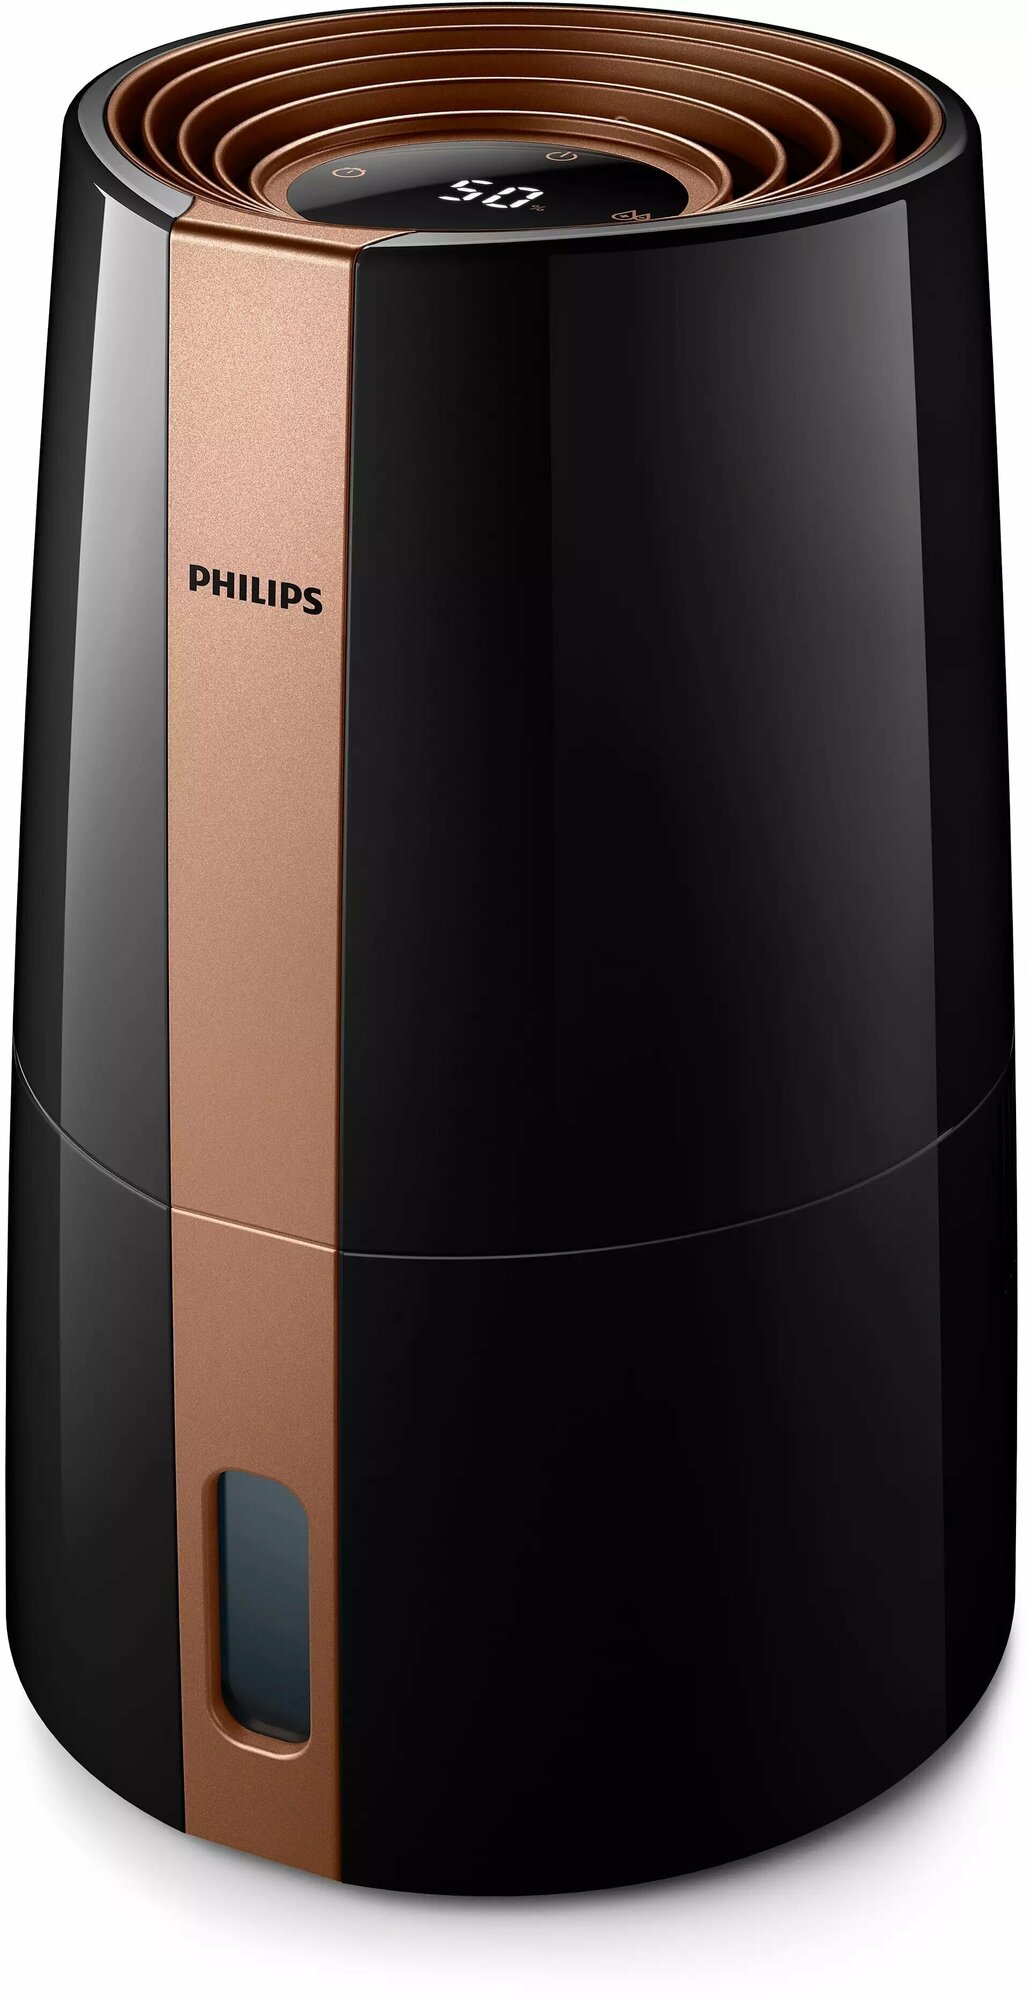 Увлажнитель воздуха с функцией ароматизации Philips HU3918, черный/медь